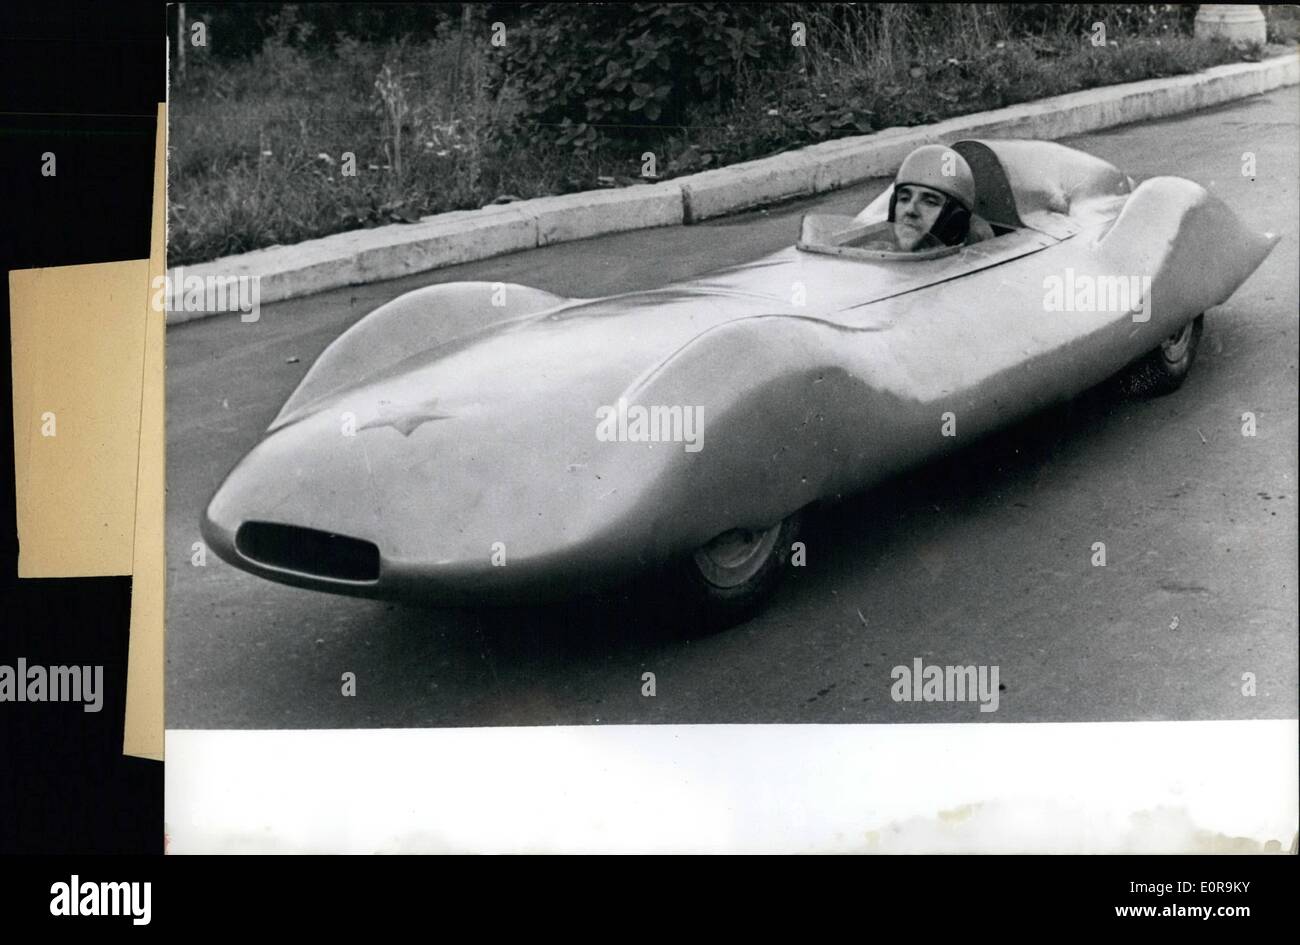 Sett. 09, 1958 - un mondo nuovo record del mondo nella classe di vetture fino a 250 kubik zentimeter, il driver russo Aleyai Amrrosenkov Foto Stock